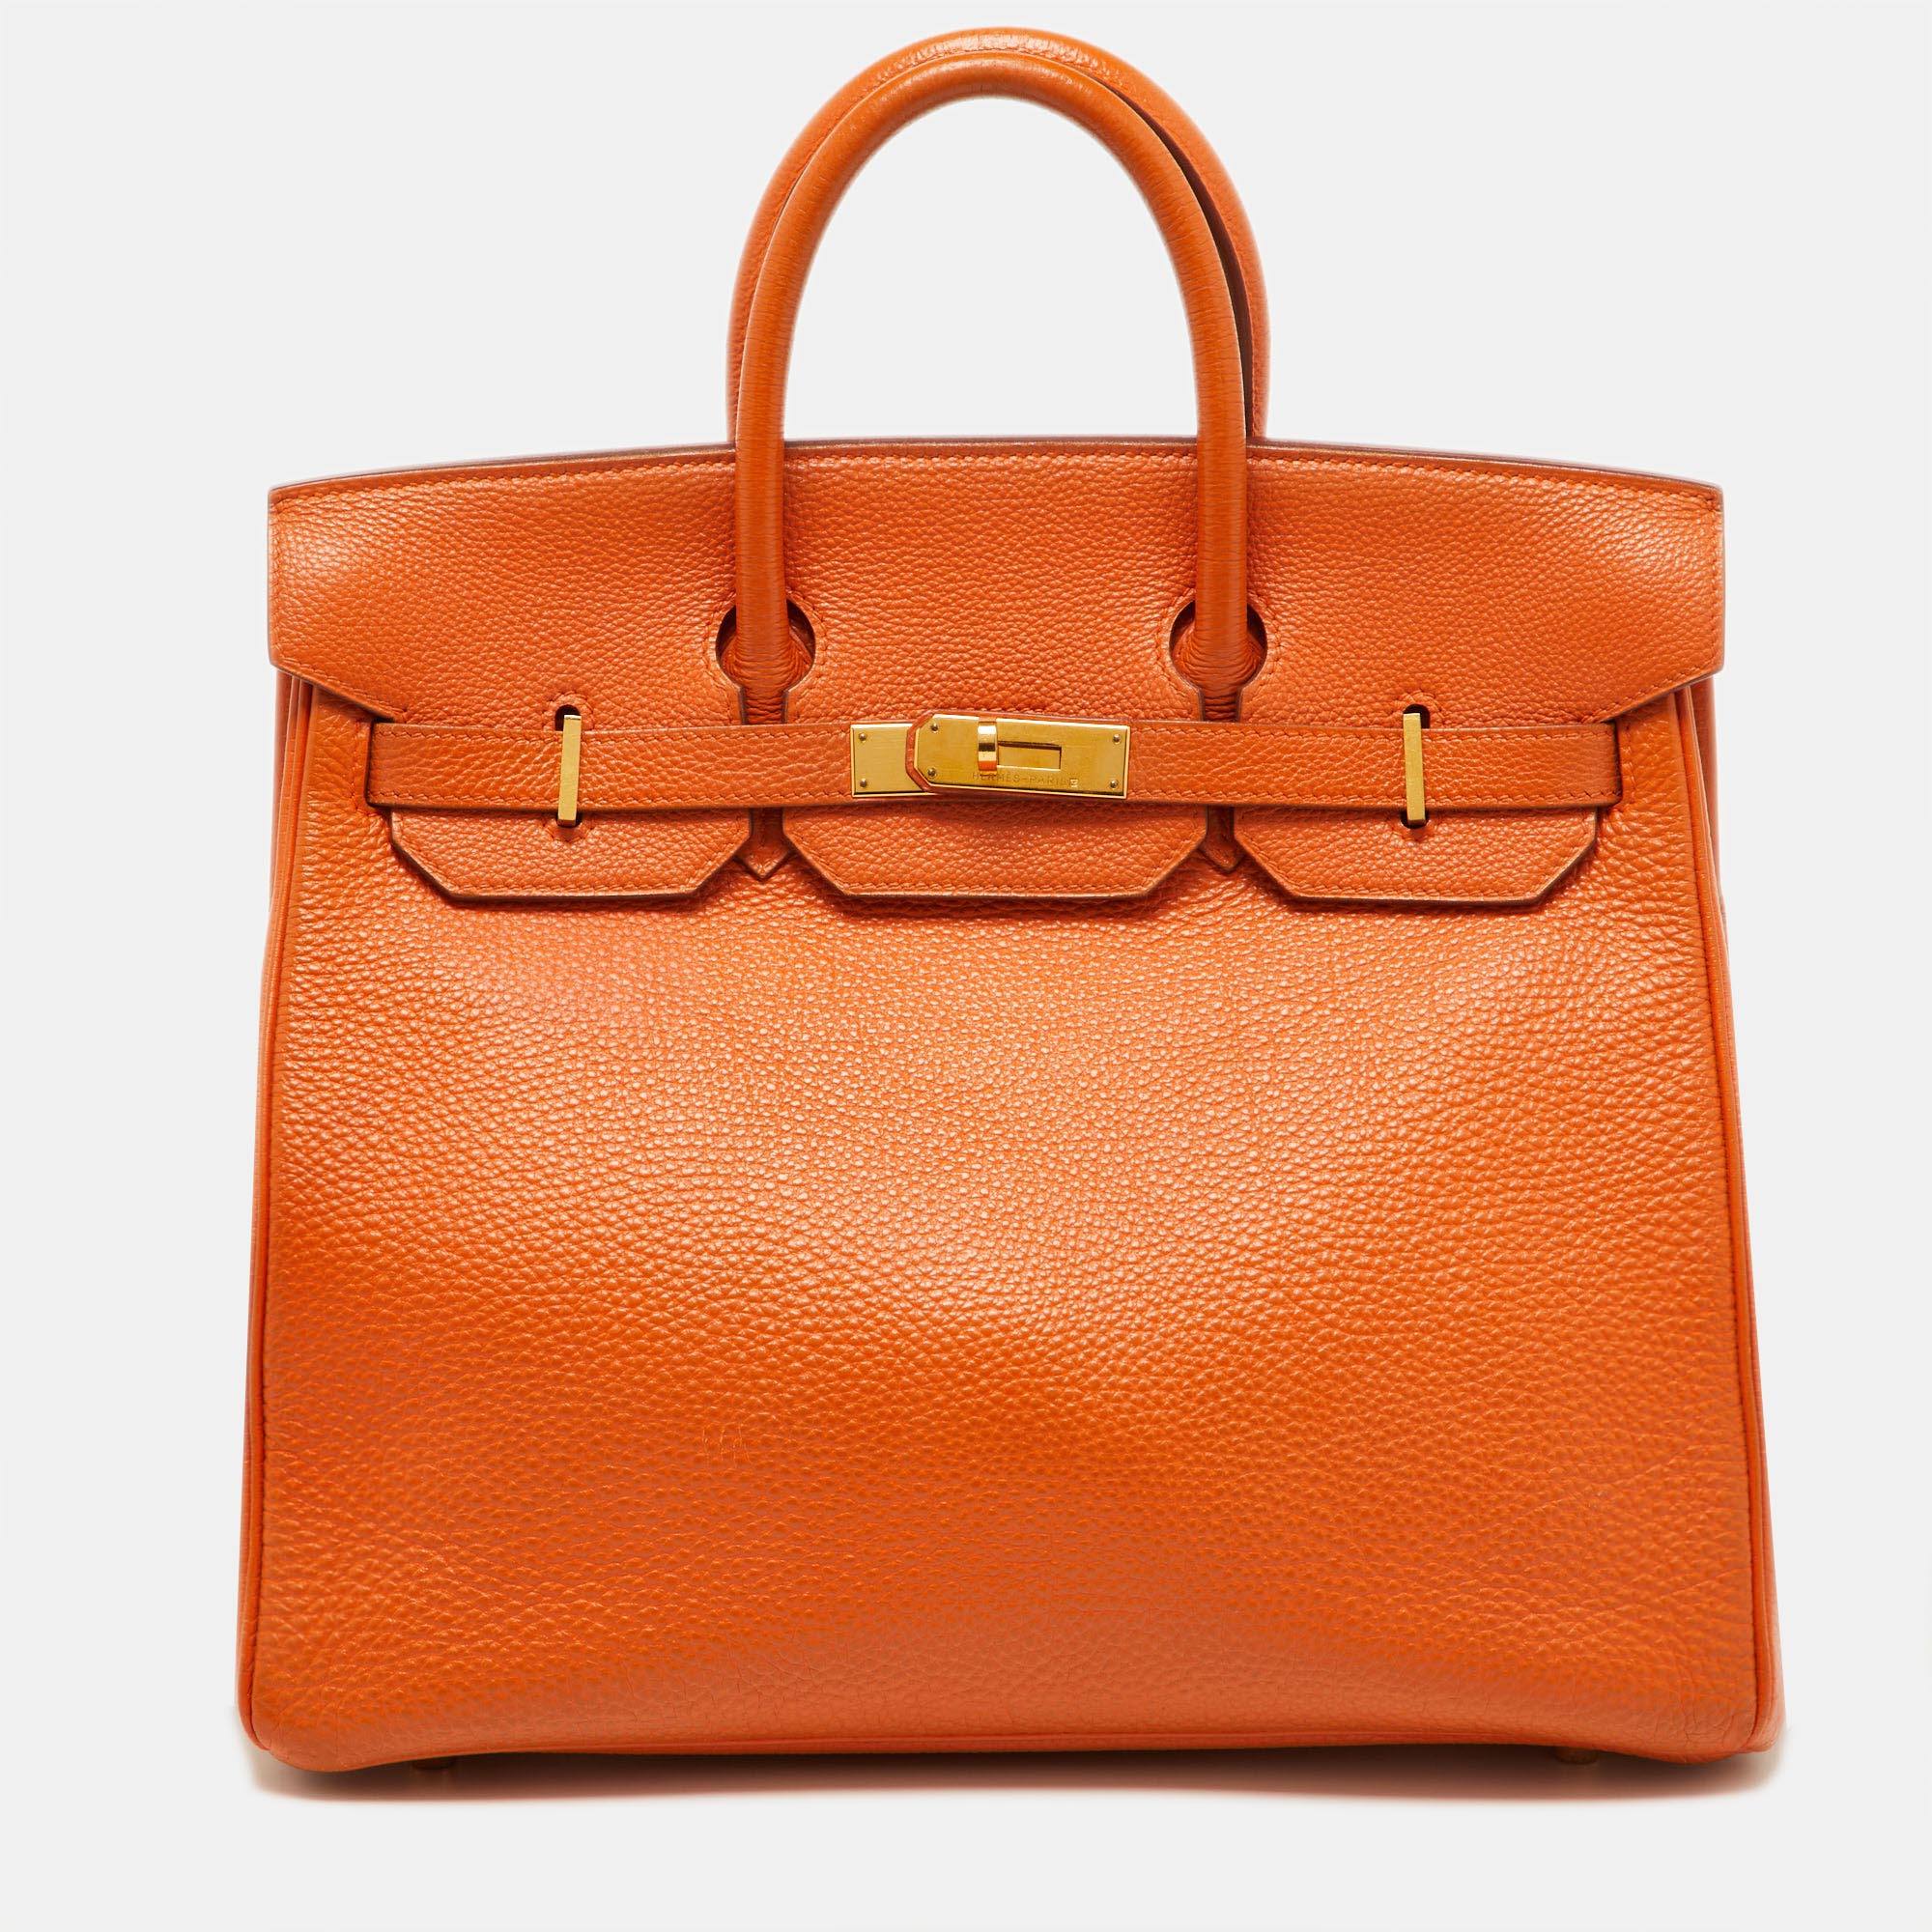 Pre-owned Hermes Orange Togo Leather Gold Hardware Hac Birkin 32 Bag